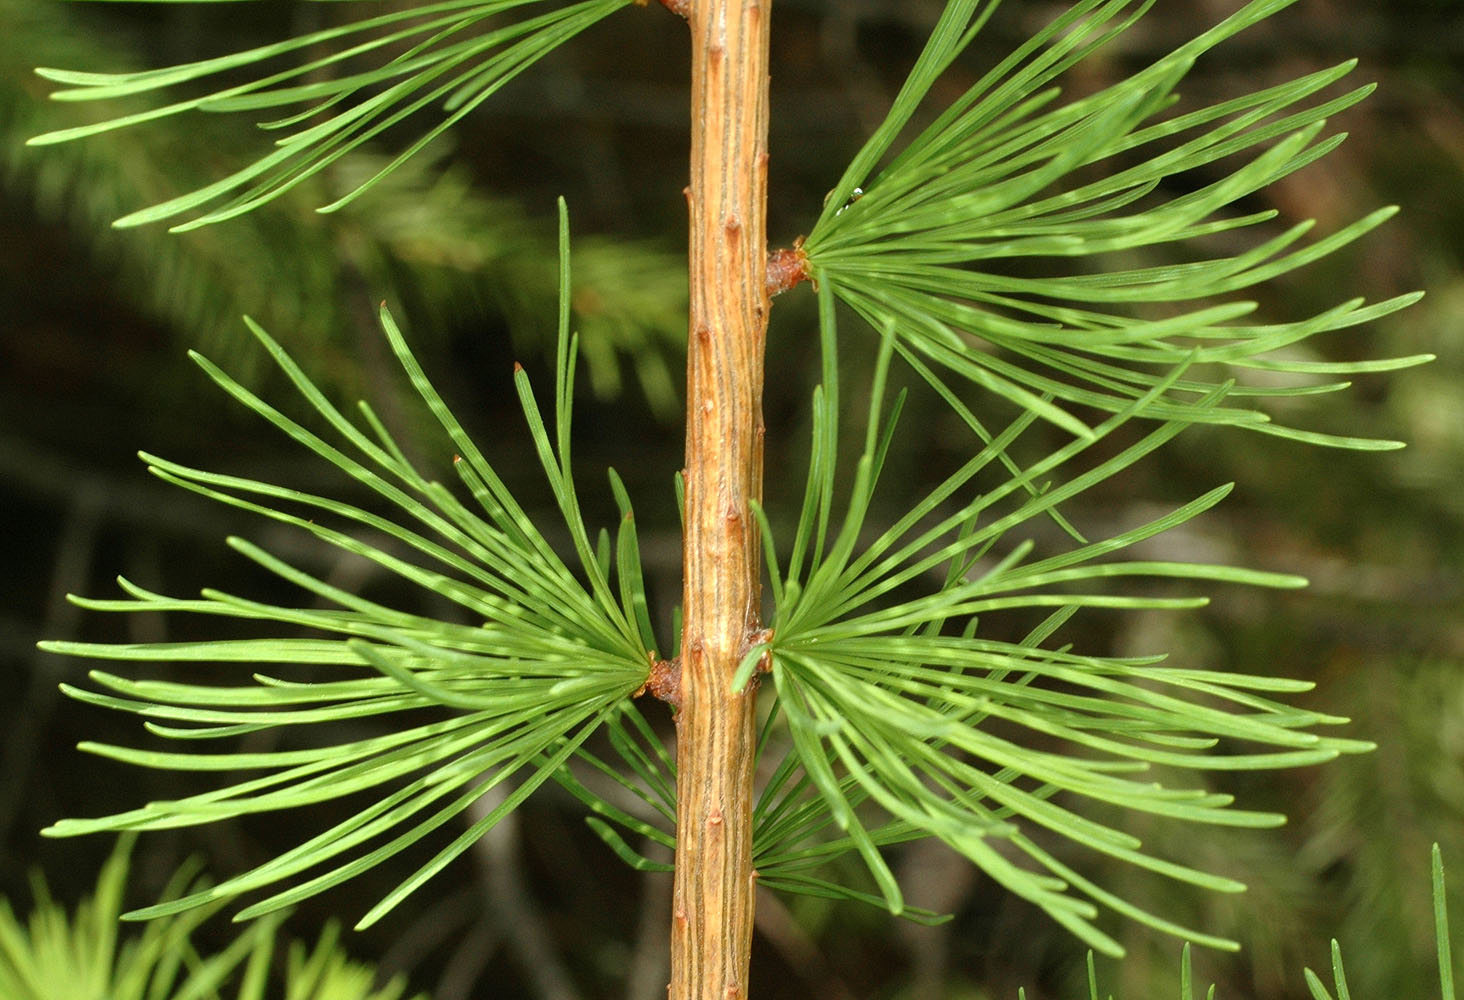 Flora of Eastern Washington Image: Larix occidentalis